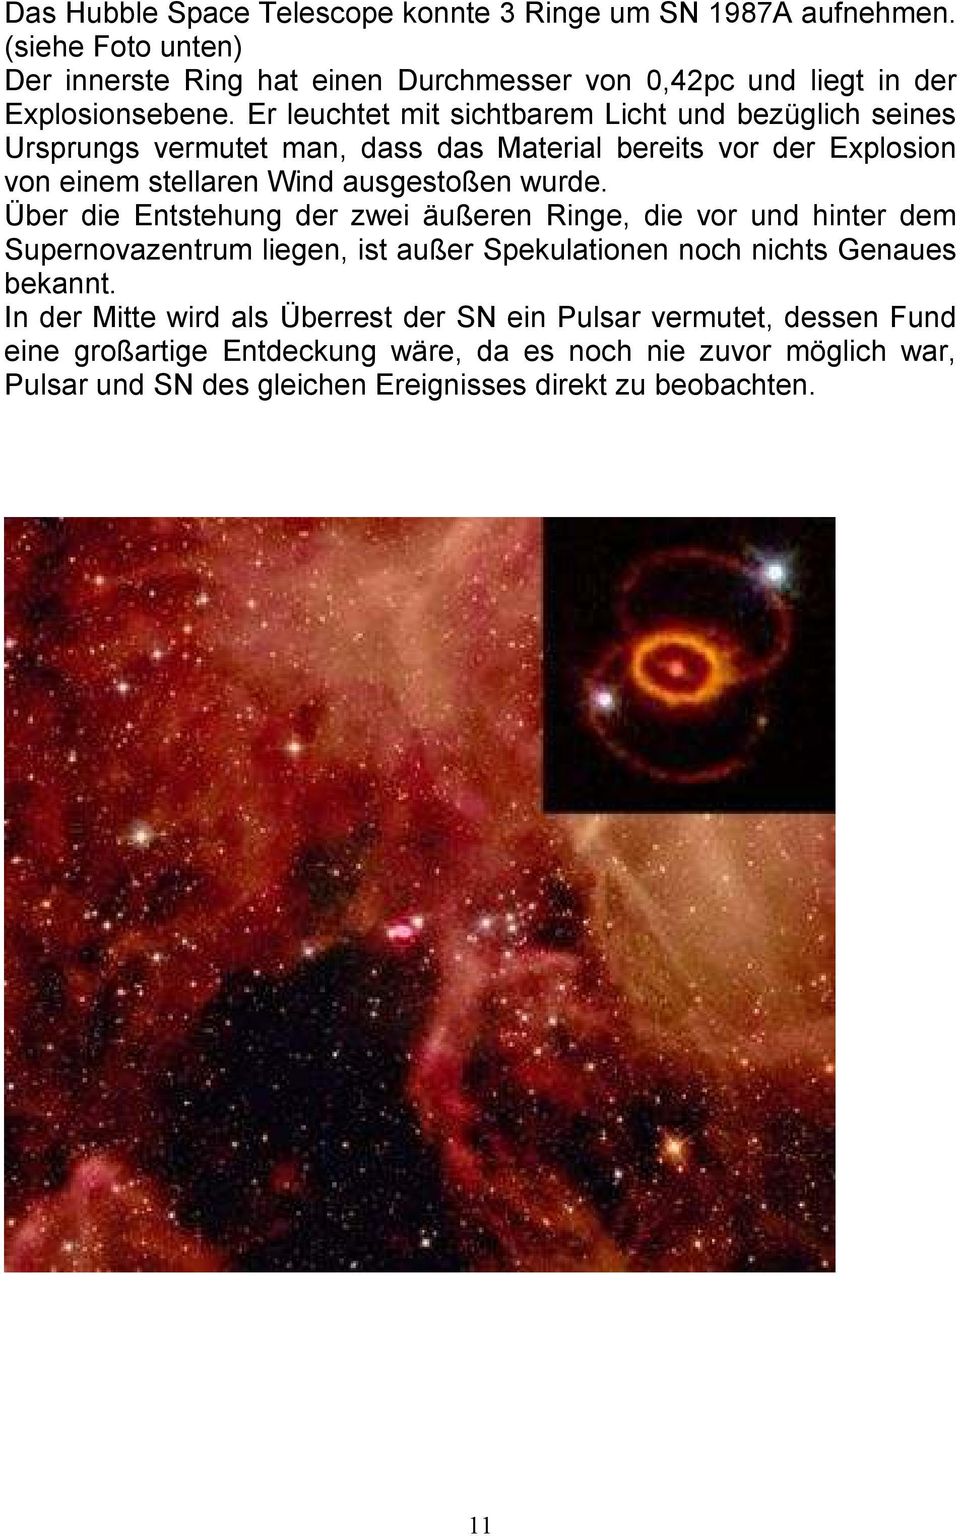 Über die Entstehung der zwei äußeren Ringe, die vor und hinter dem Supernovazentrum liegen, ist außer Spekulationen noch nichts Genaues bekannt.